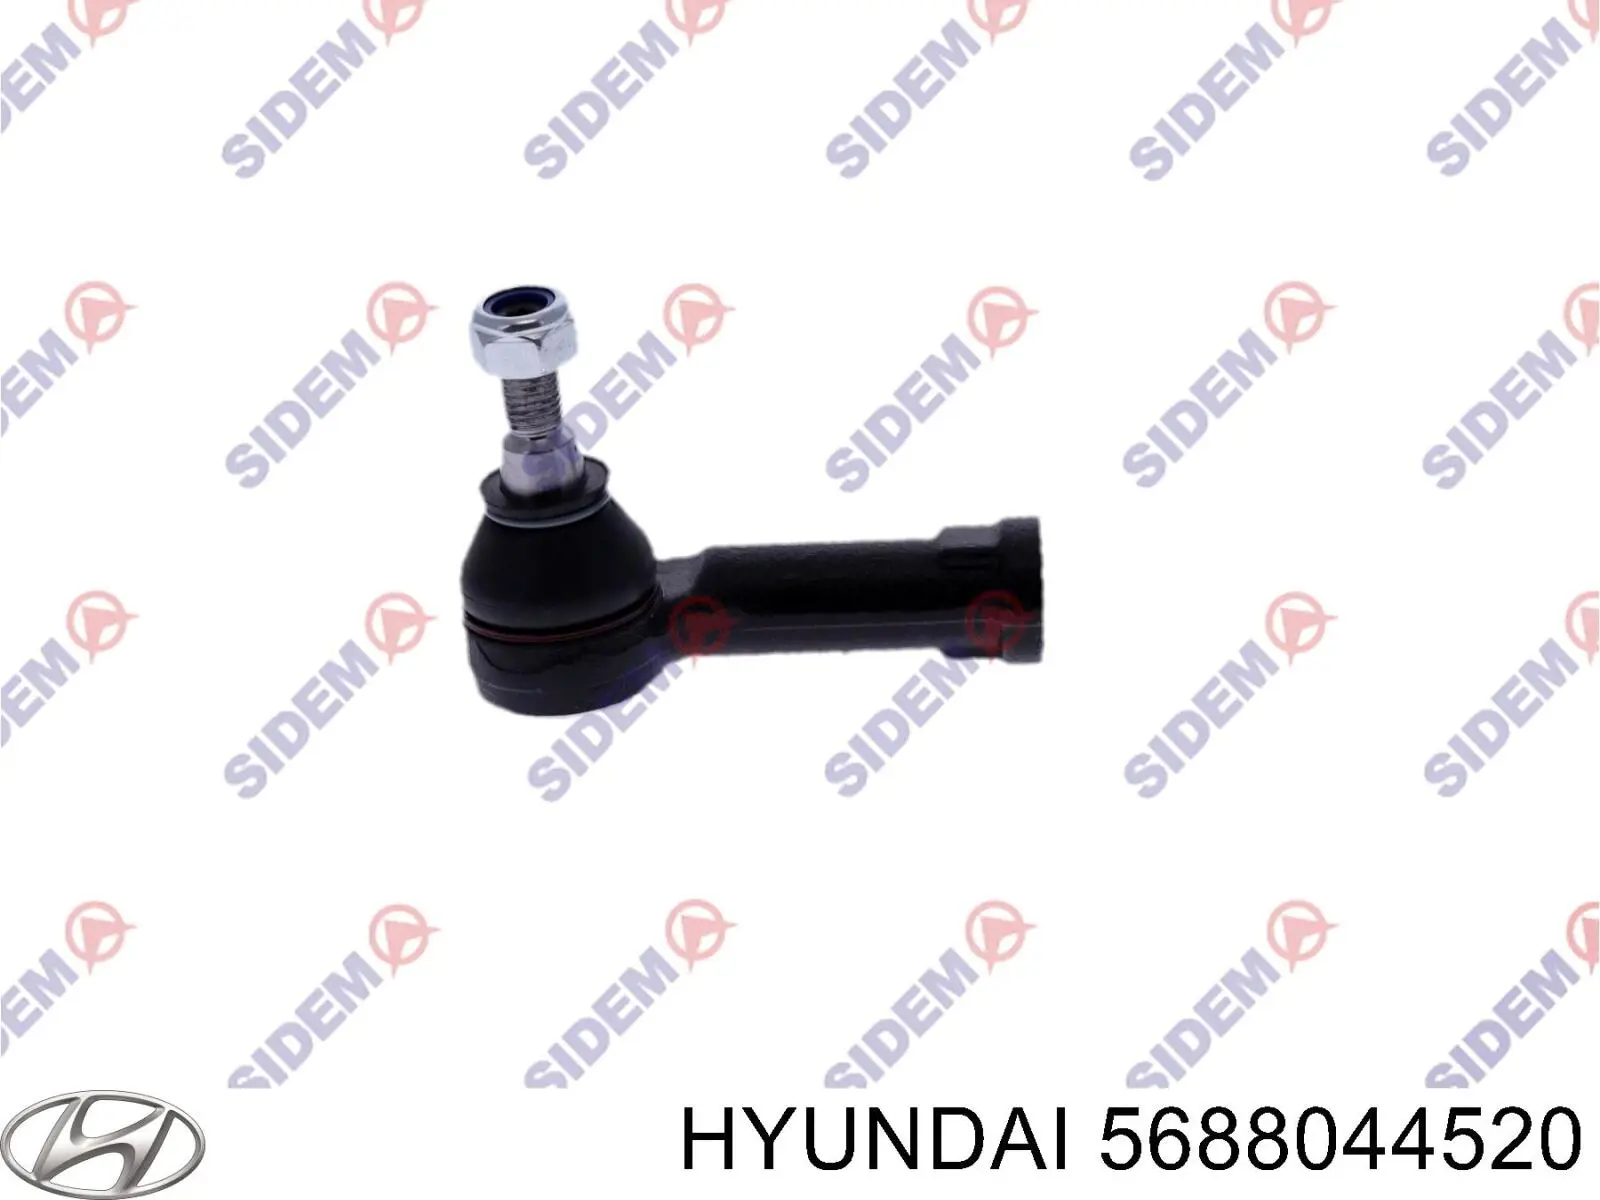 5688044520 Hyundai/Kia rótula barra de acoplamiento exterior